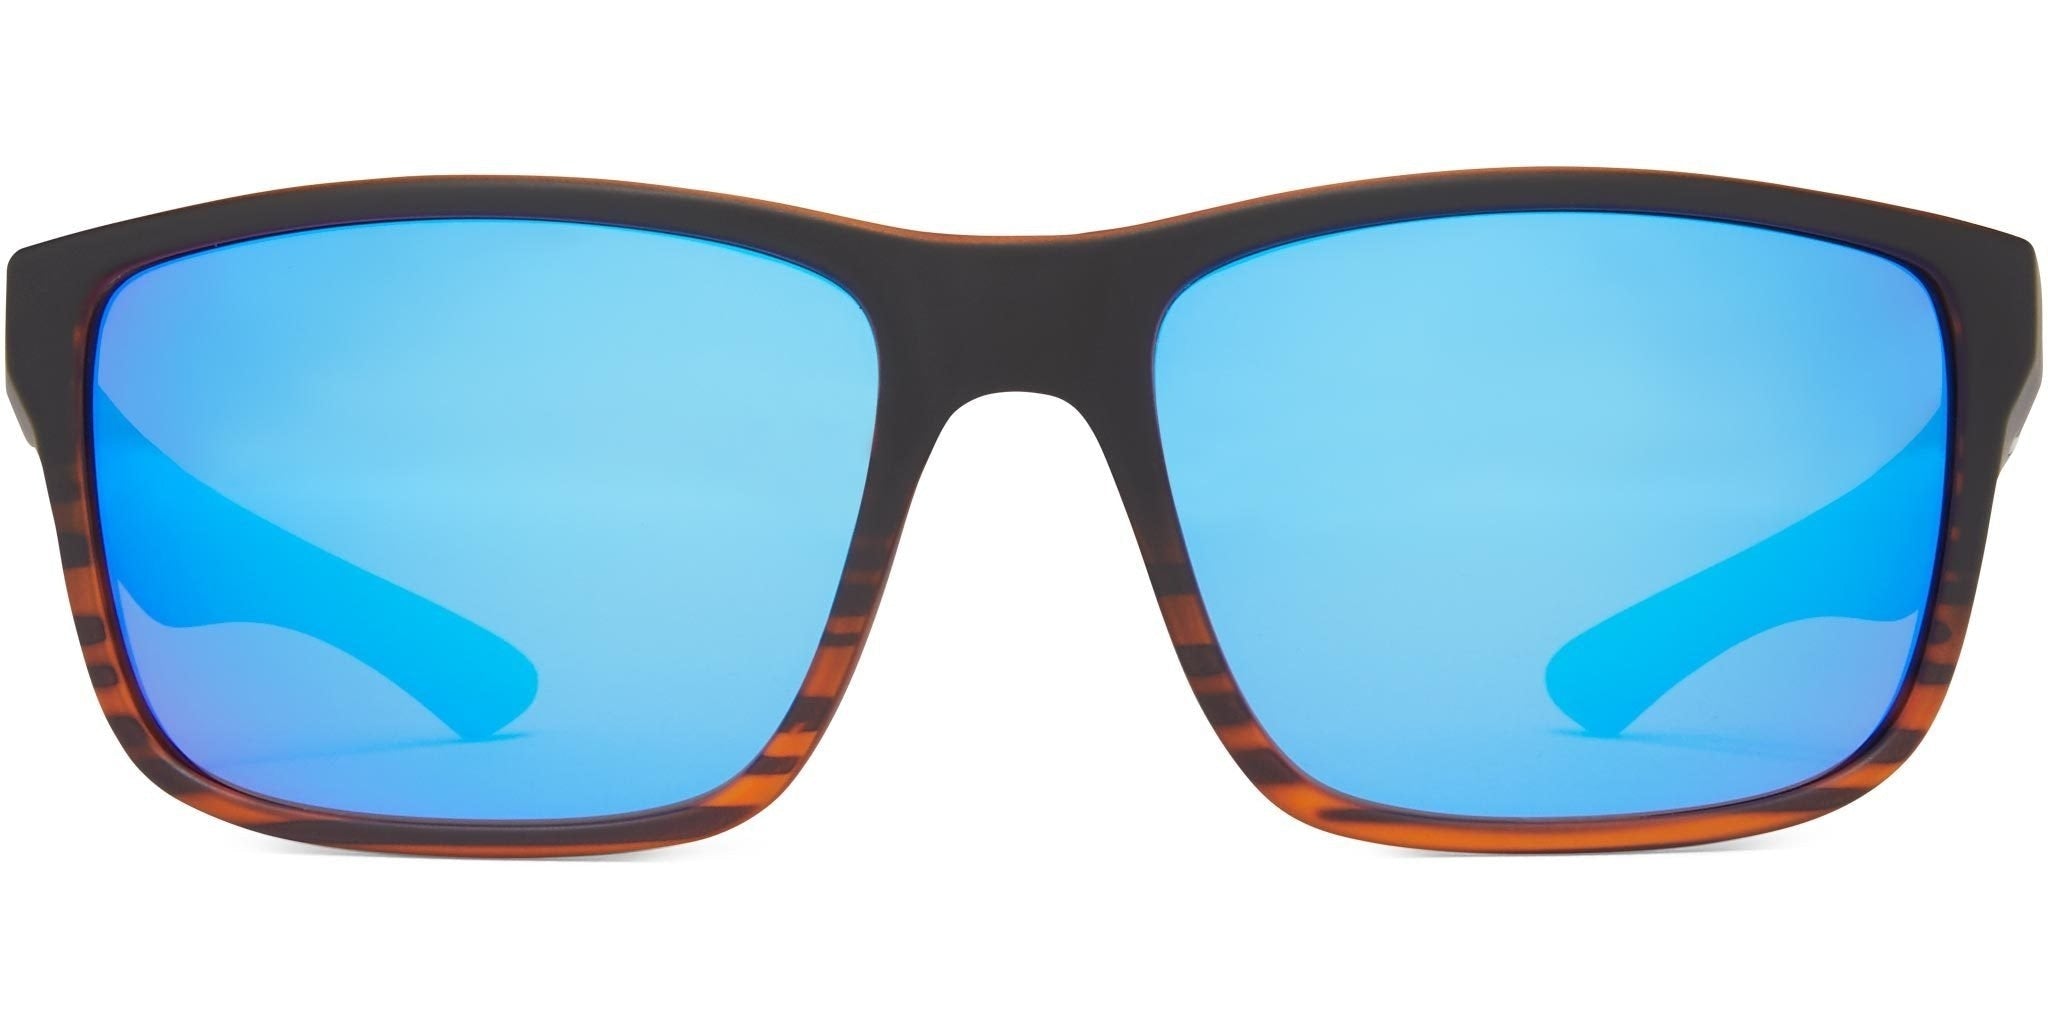  Fisherman Eyewear Men's Cabana Polarized Rectangular  Sunglasses, Black, 39mm,56mm,145mm : Clothing, Shoes & Jewelry